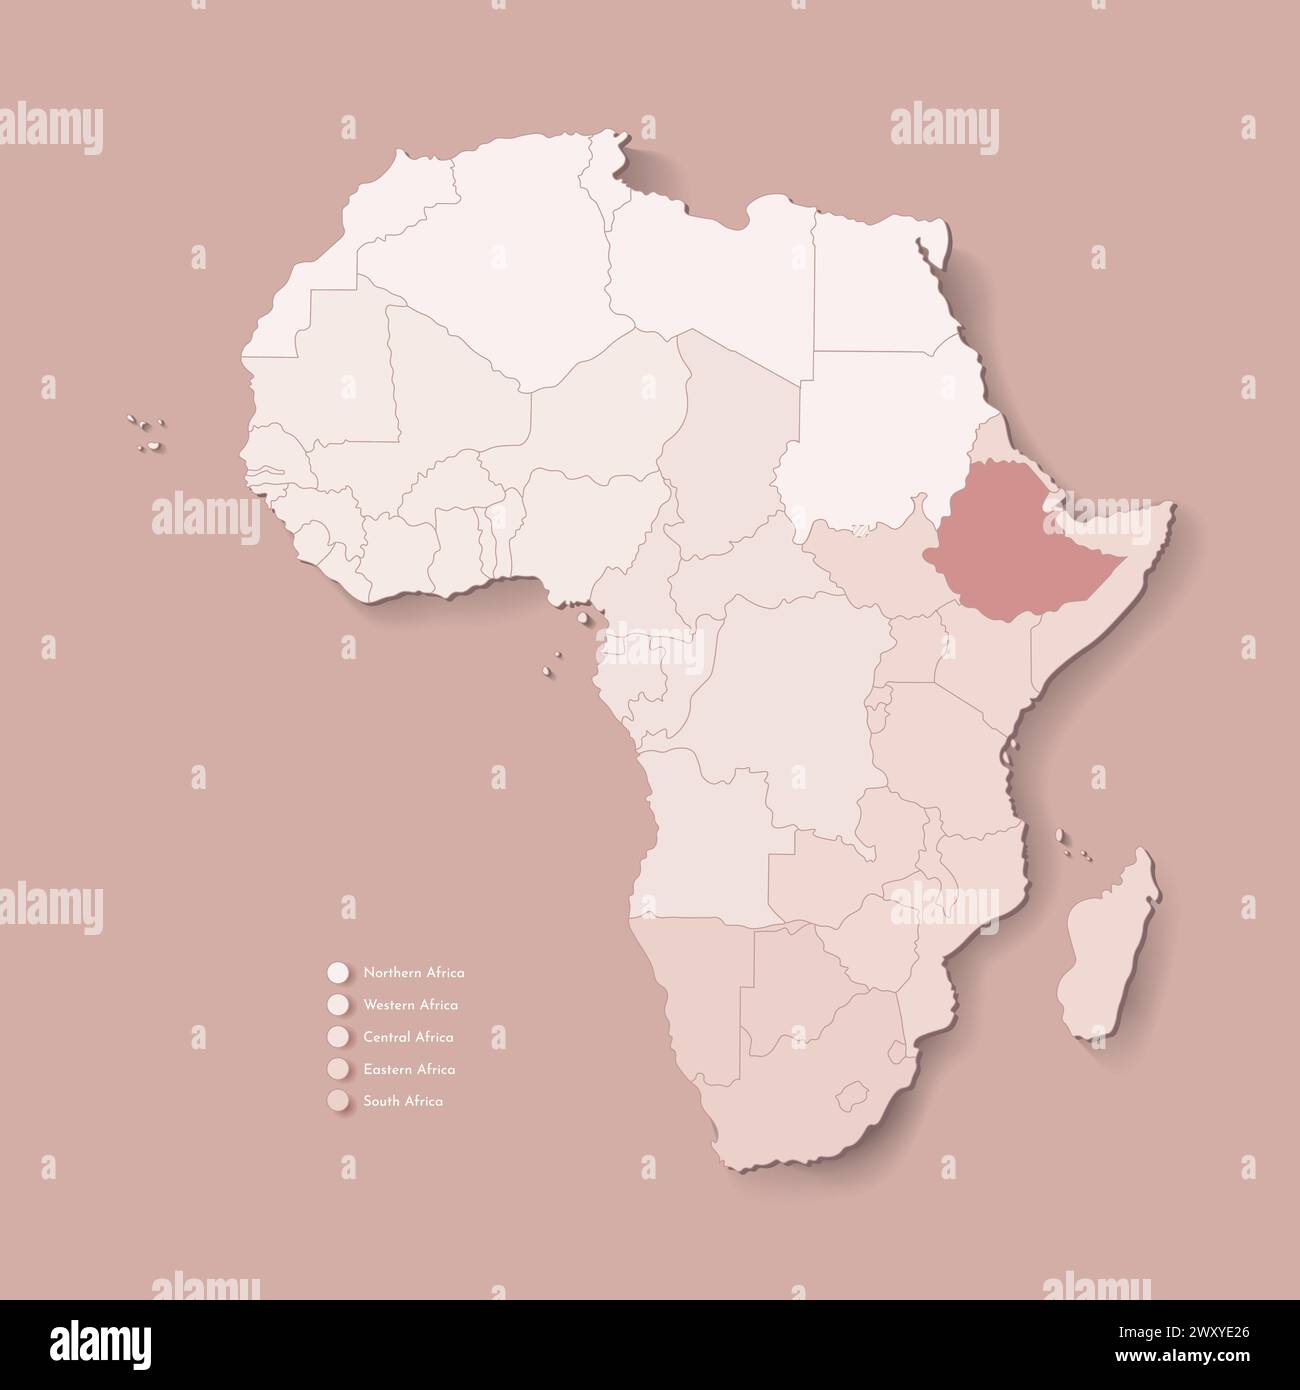 Illustrazione vettoriale con continente africano con confini di tutti gli stati e paese marcato Etiopia. Mappa politica di colore marrone con occidentale, sud A. Illustrazione Vettoriale